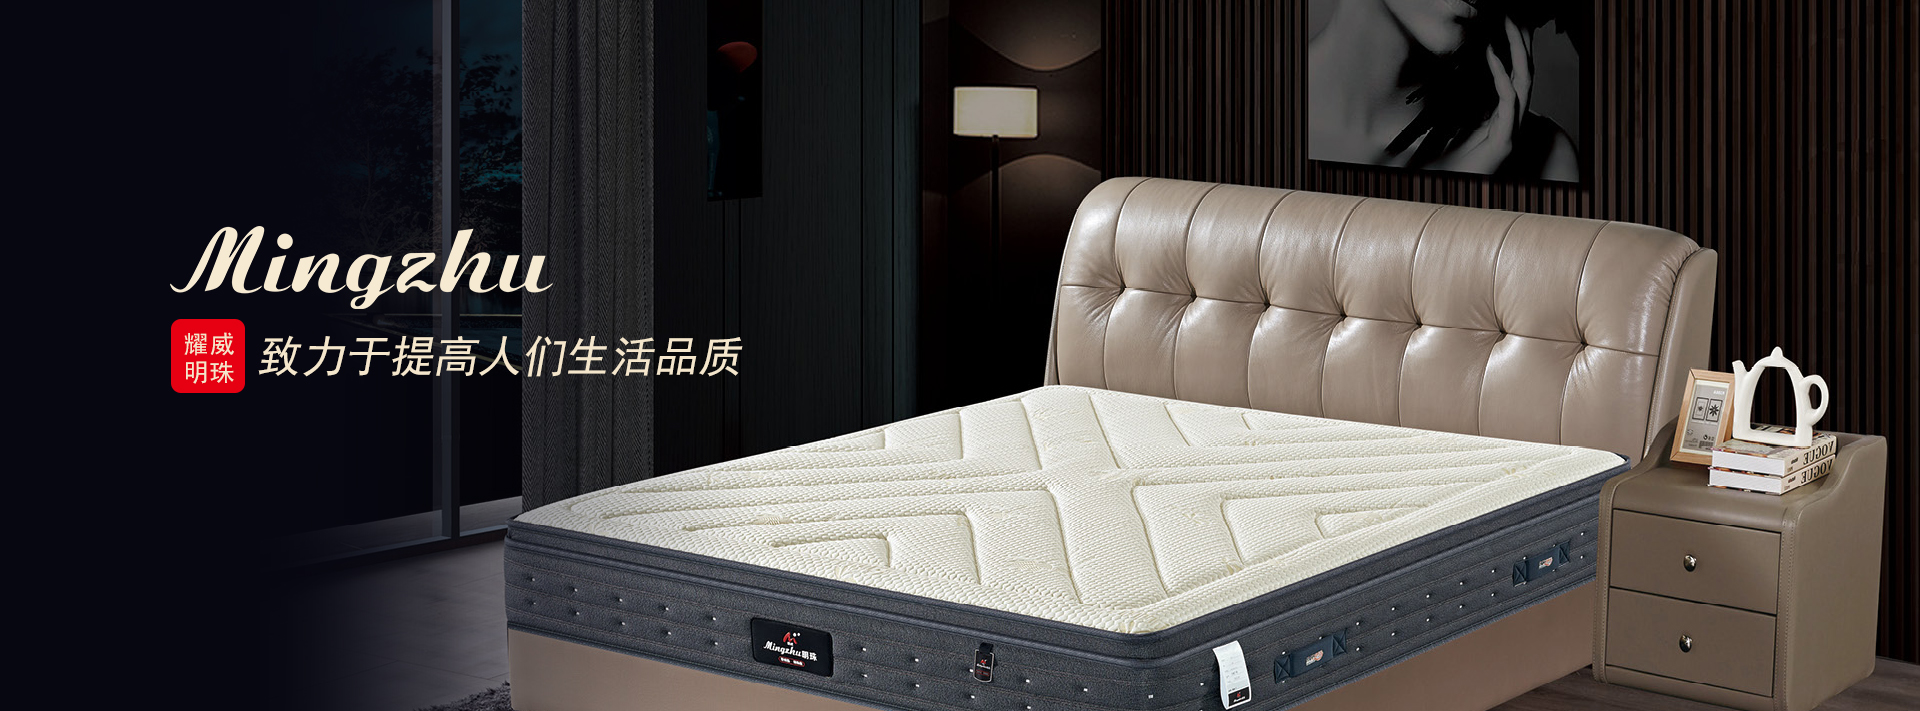 重庆kok全站版app下载
床垫有限公司